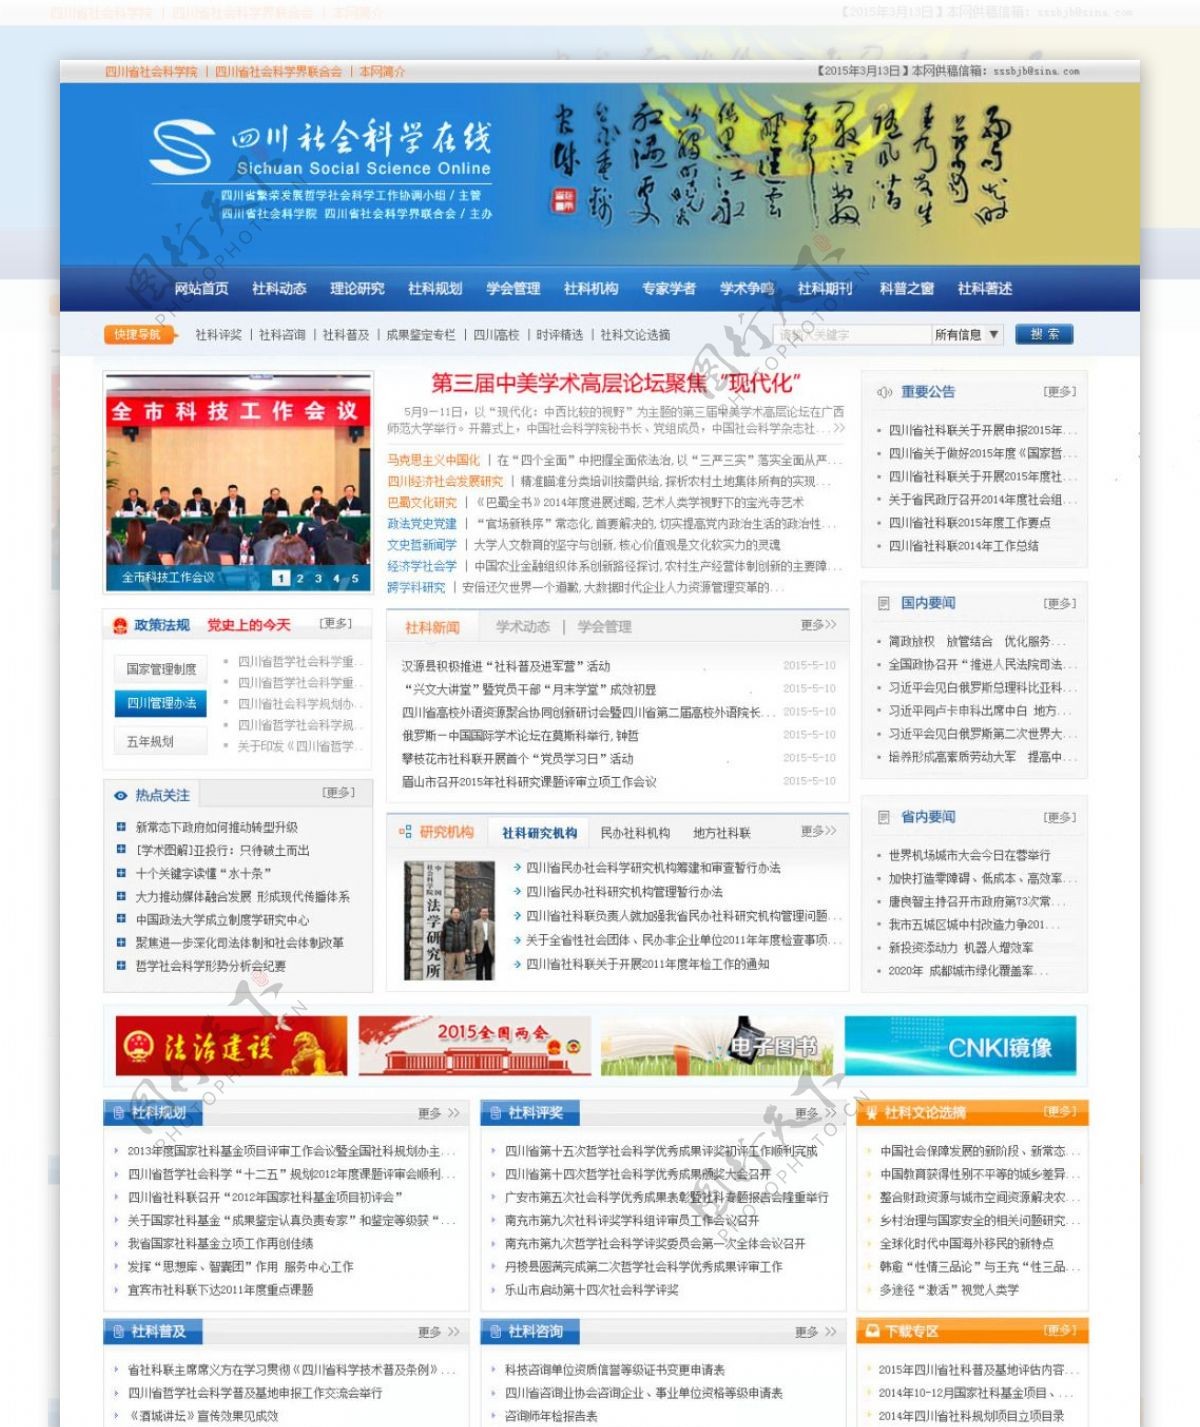 四川省社会科学院主页设计